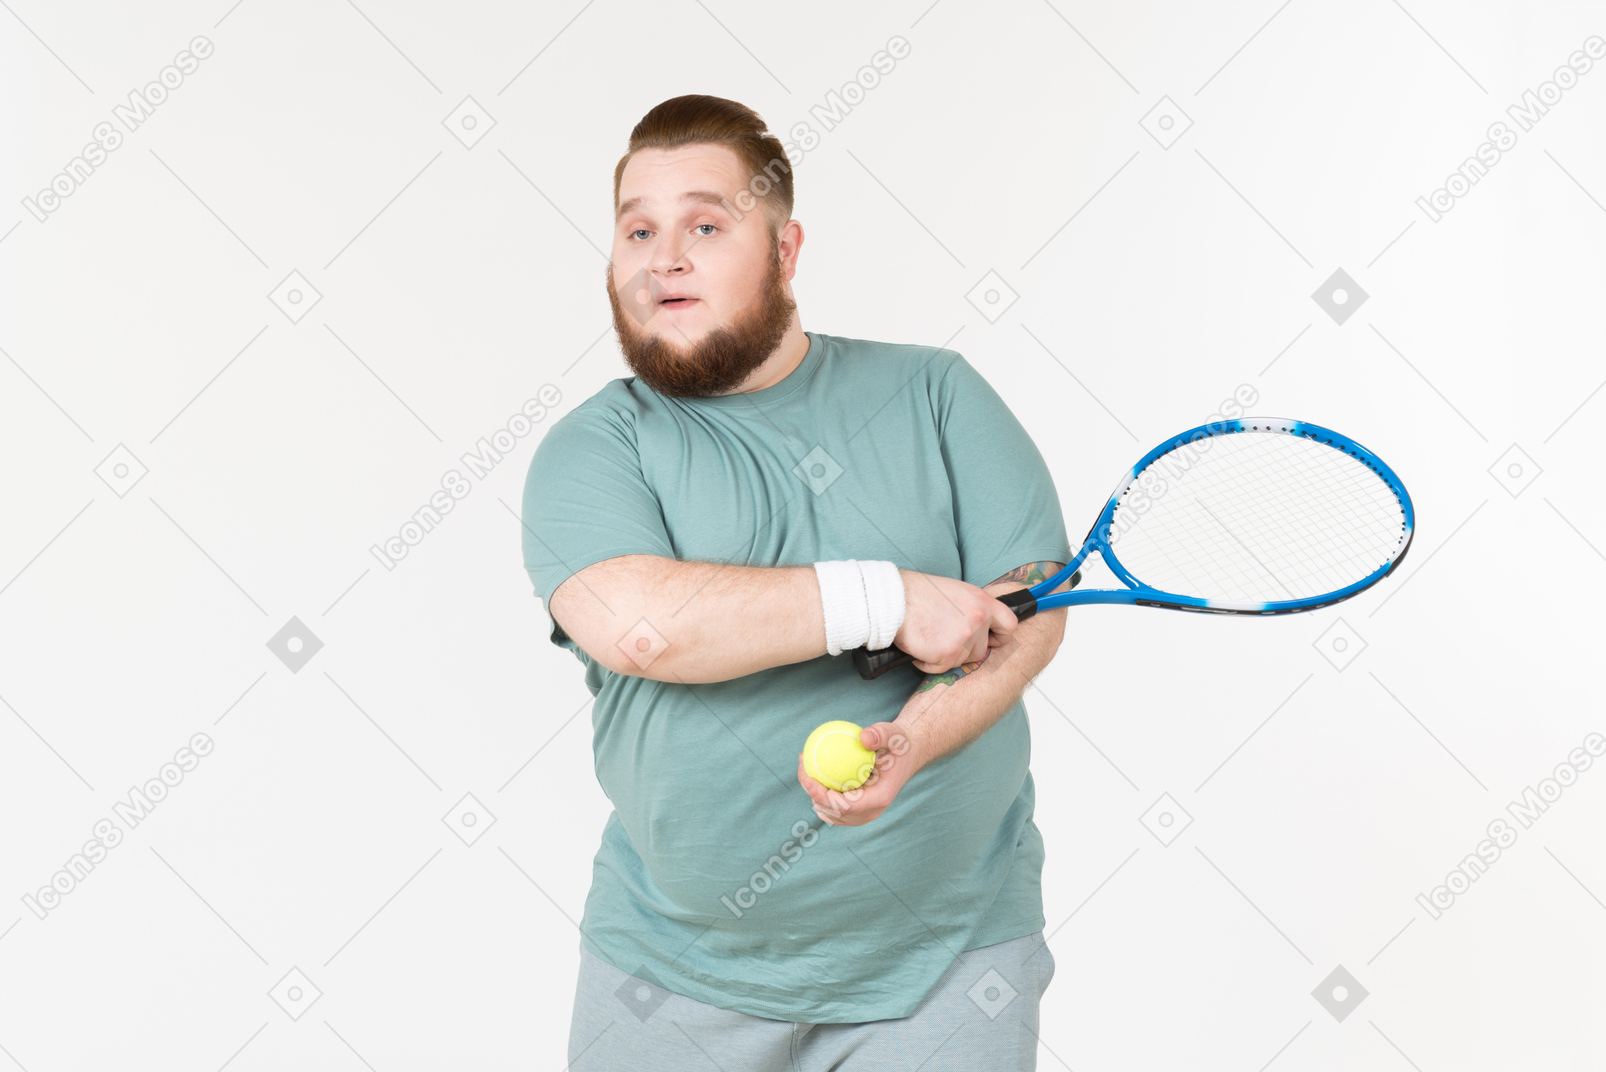 拿着网球拍和网球的运动服的大人物